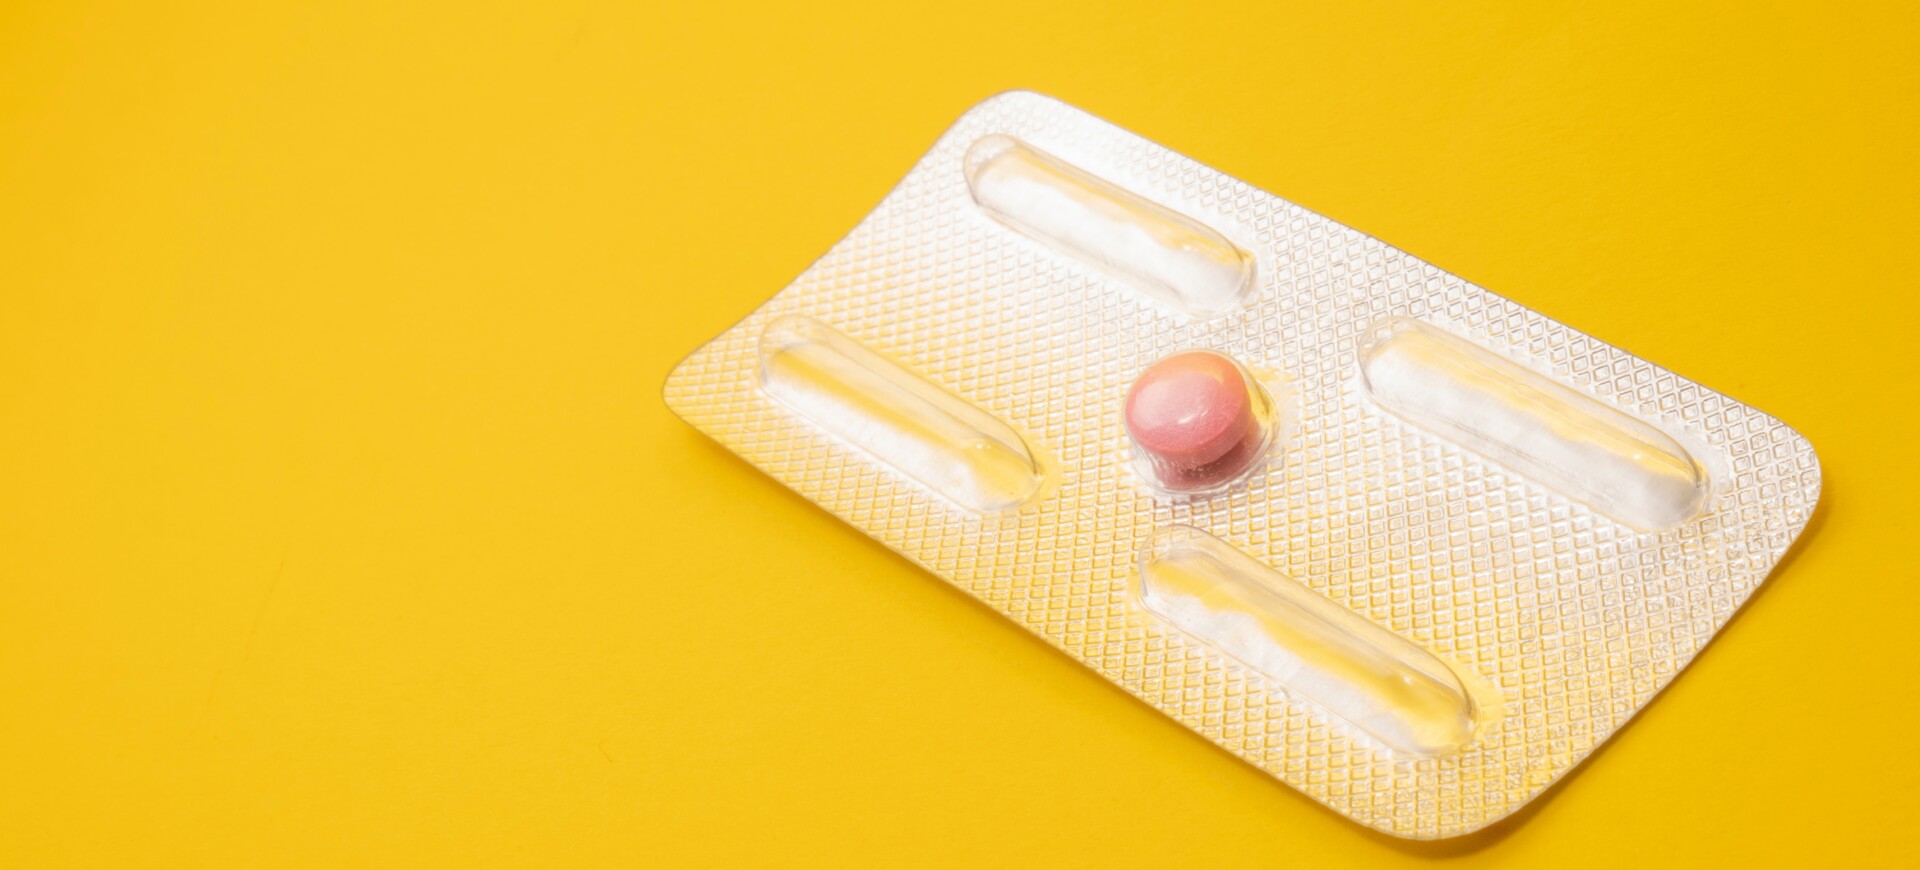 pilula elvețiană pentru avort împotriva îmbătrânirii